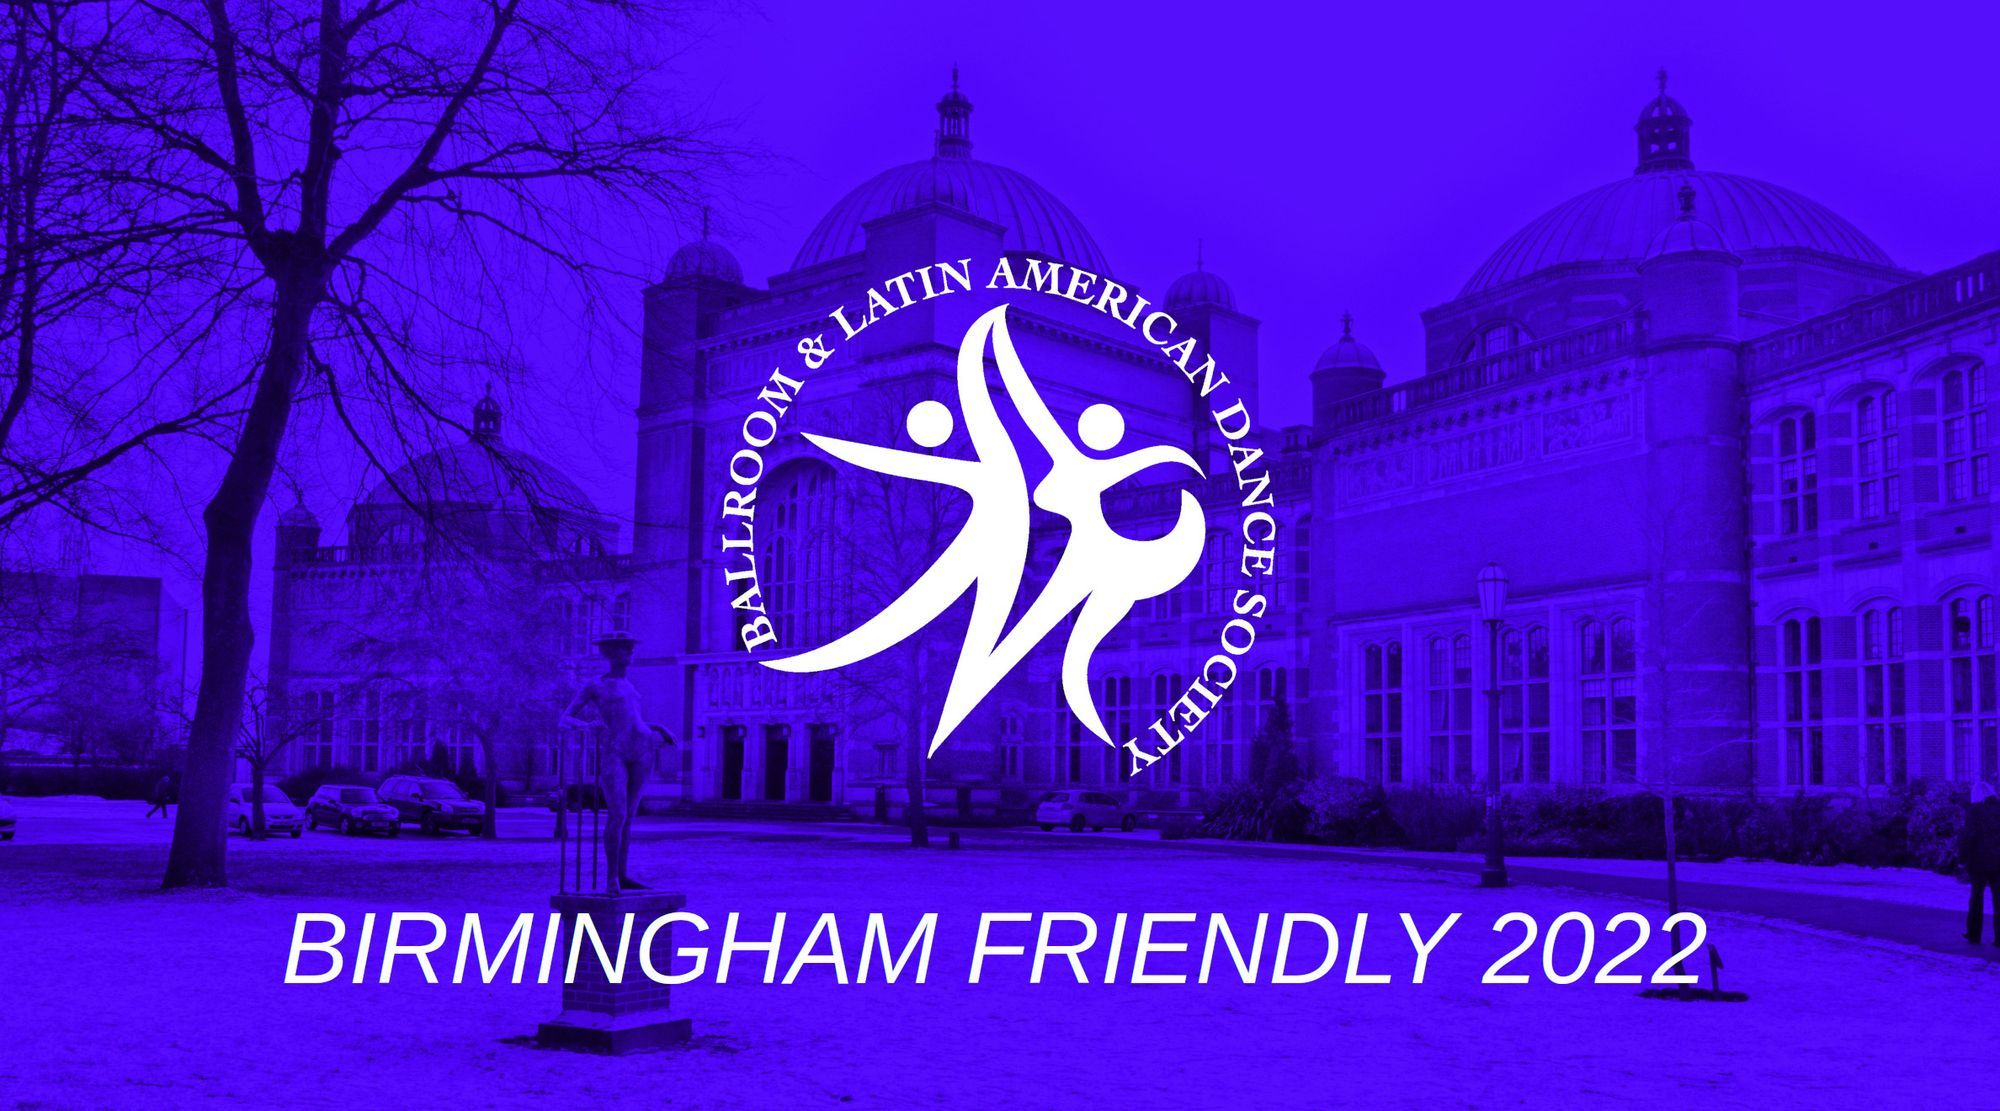 Entries closing soon for Birmingham Friendly!